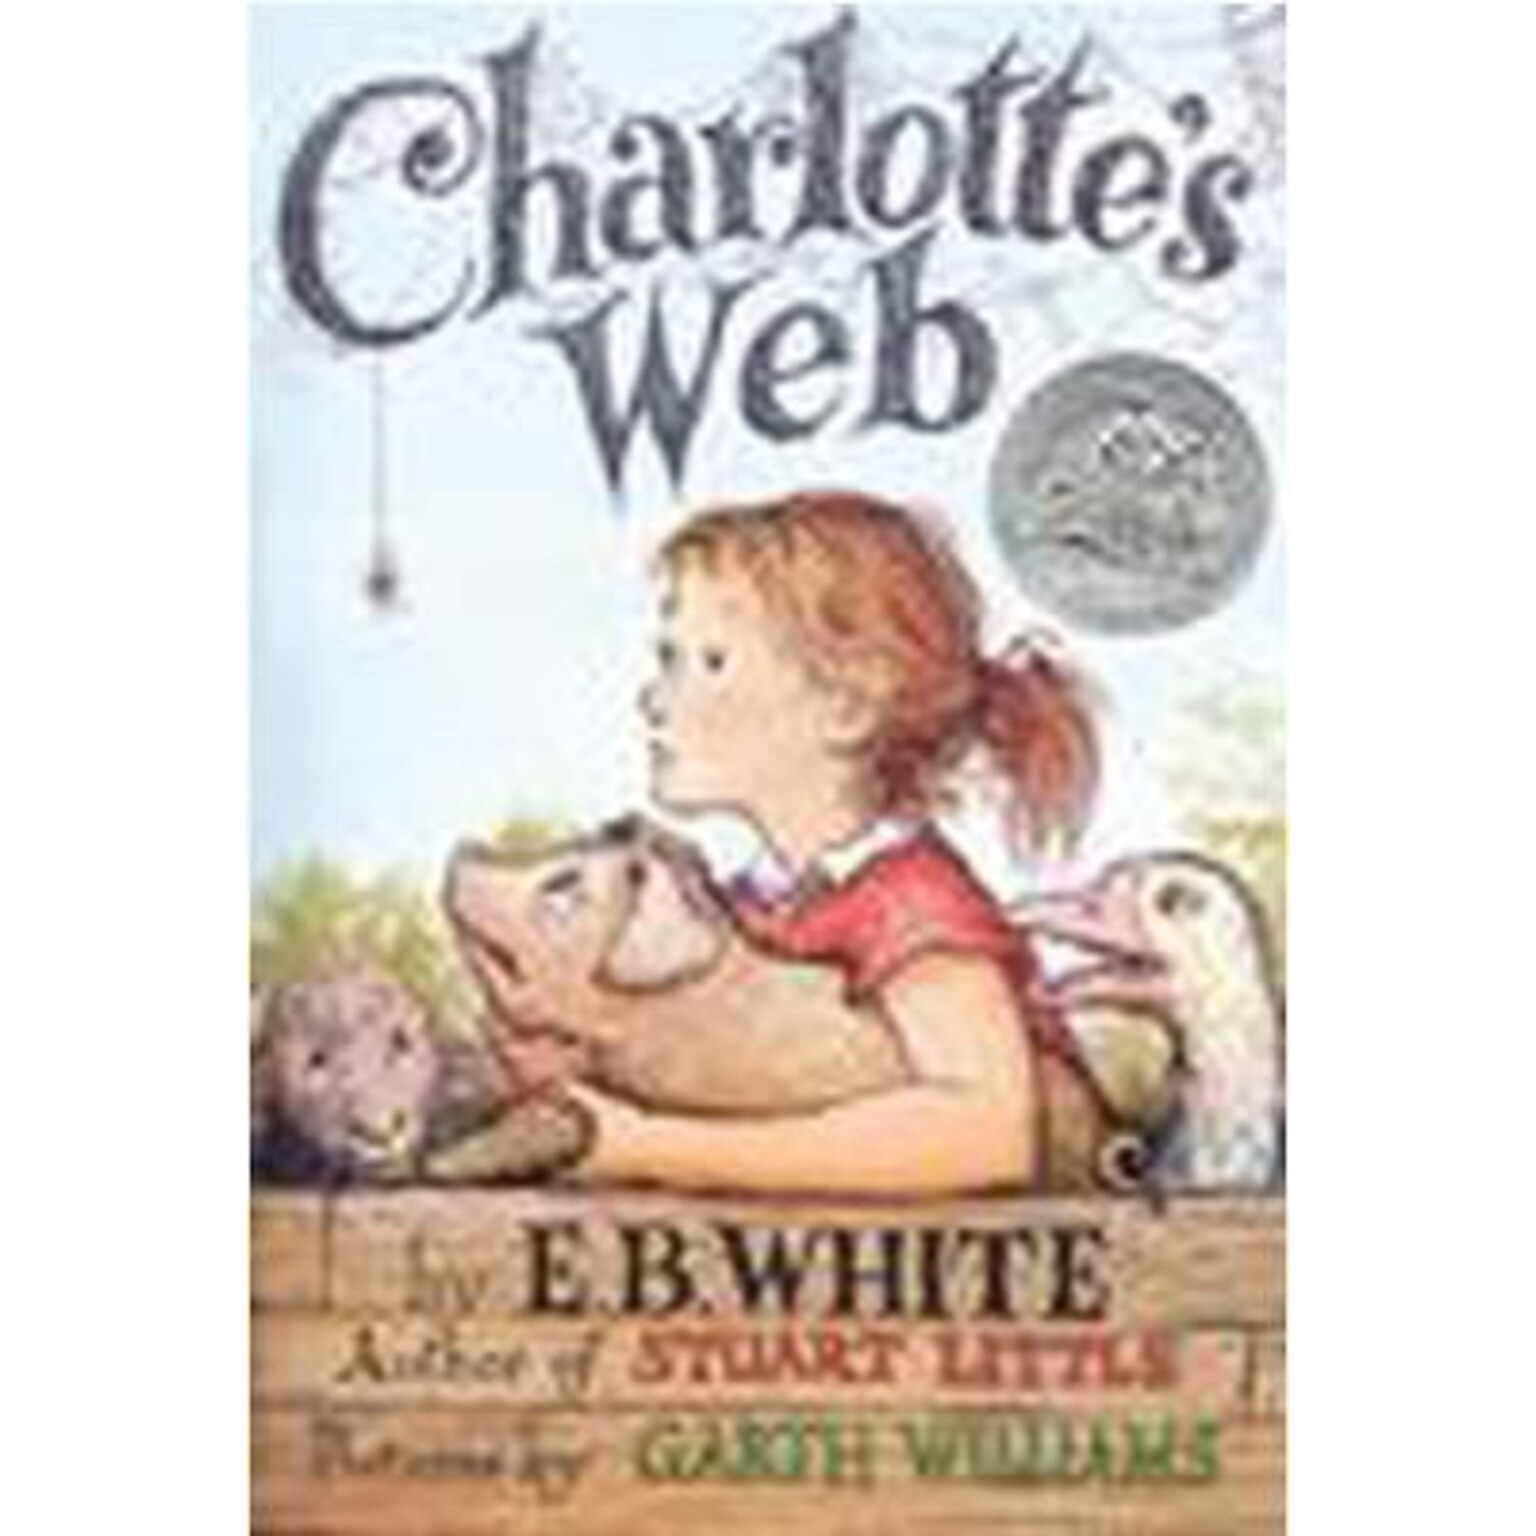 Harper Collins Charlottes Web Book By E.B. White, Grades All